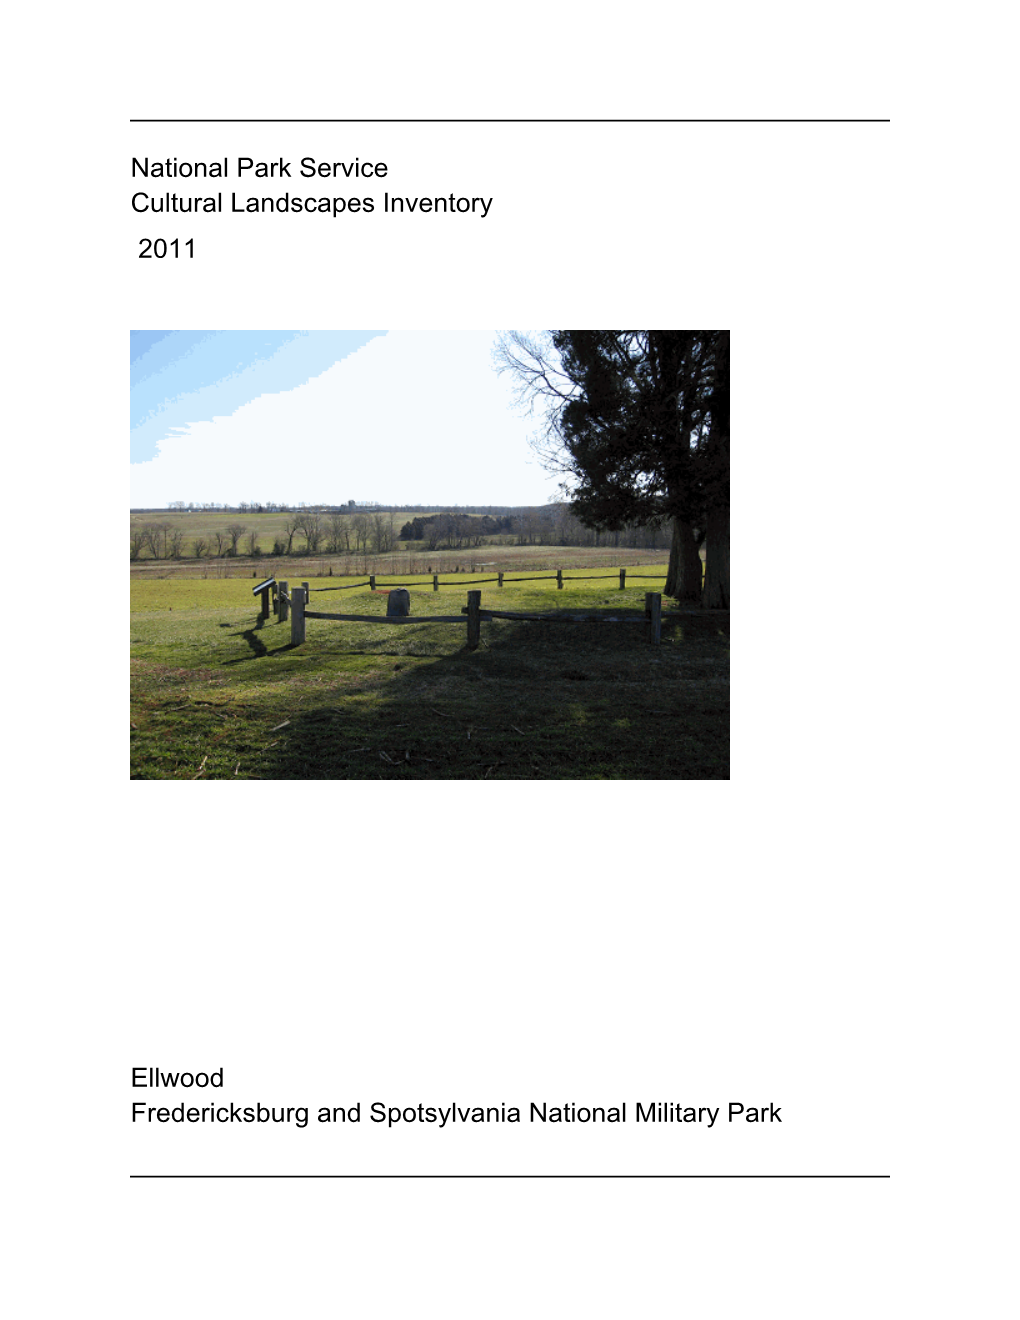 National Park Service Cultural Landscapes Inventory Ellwood